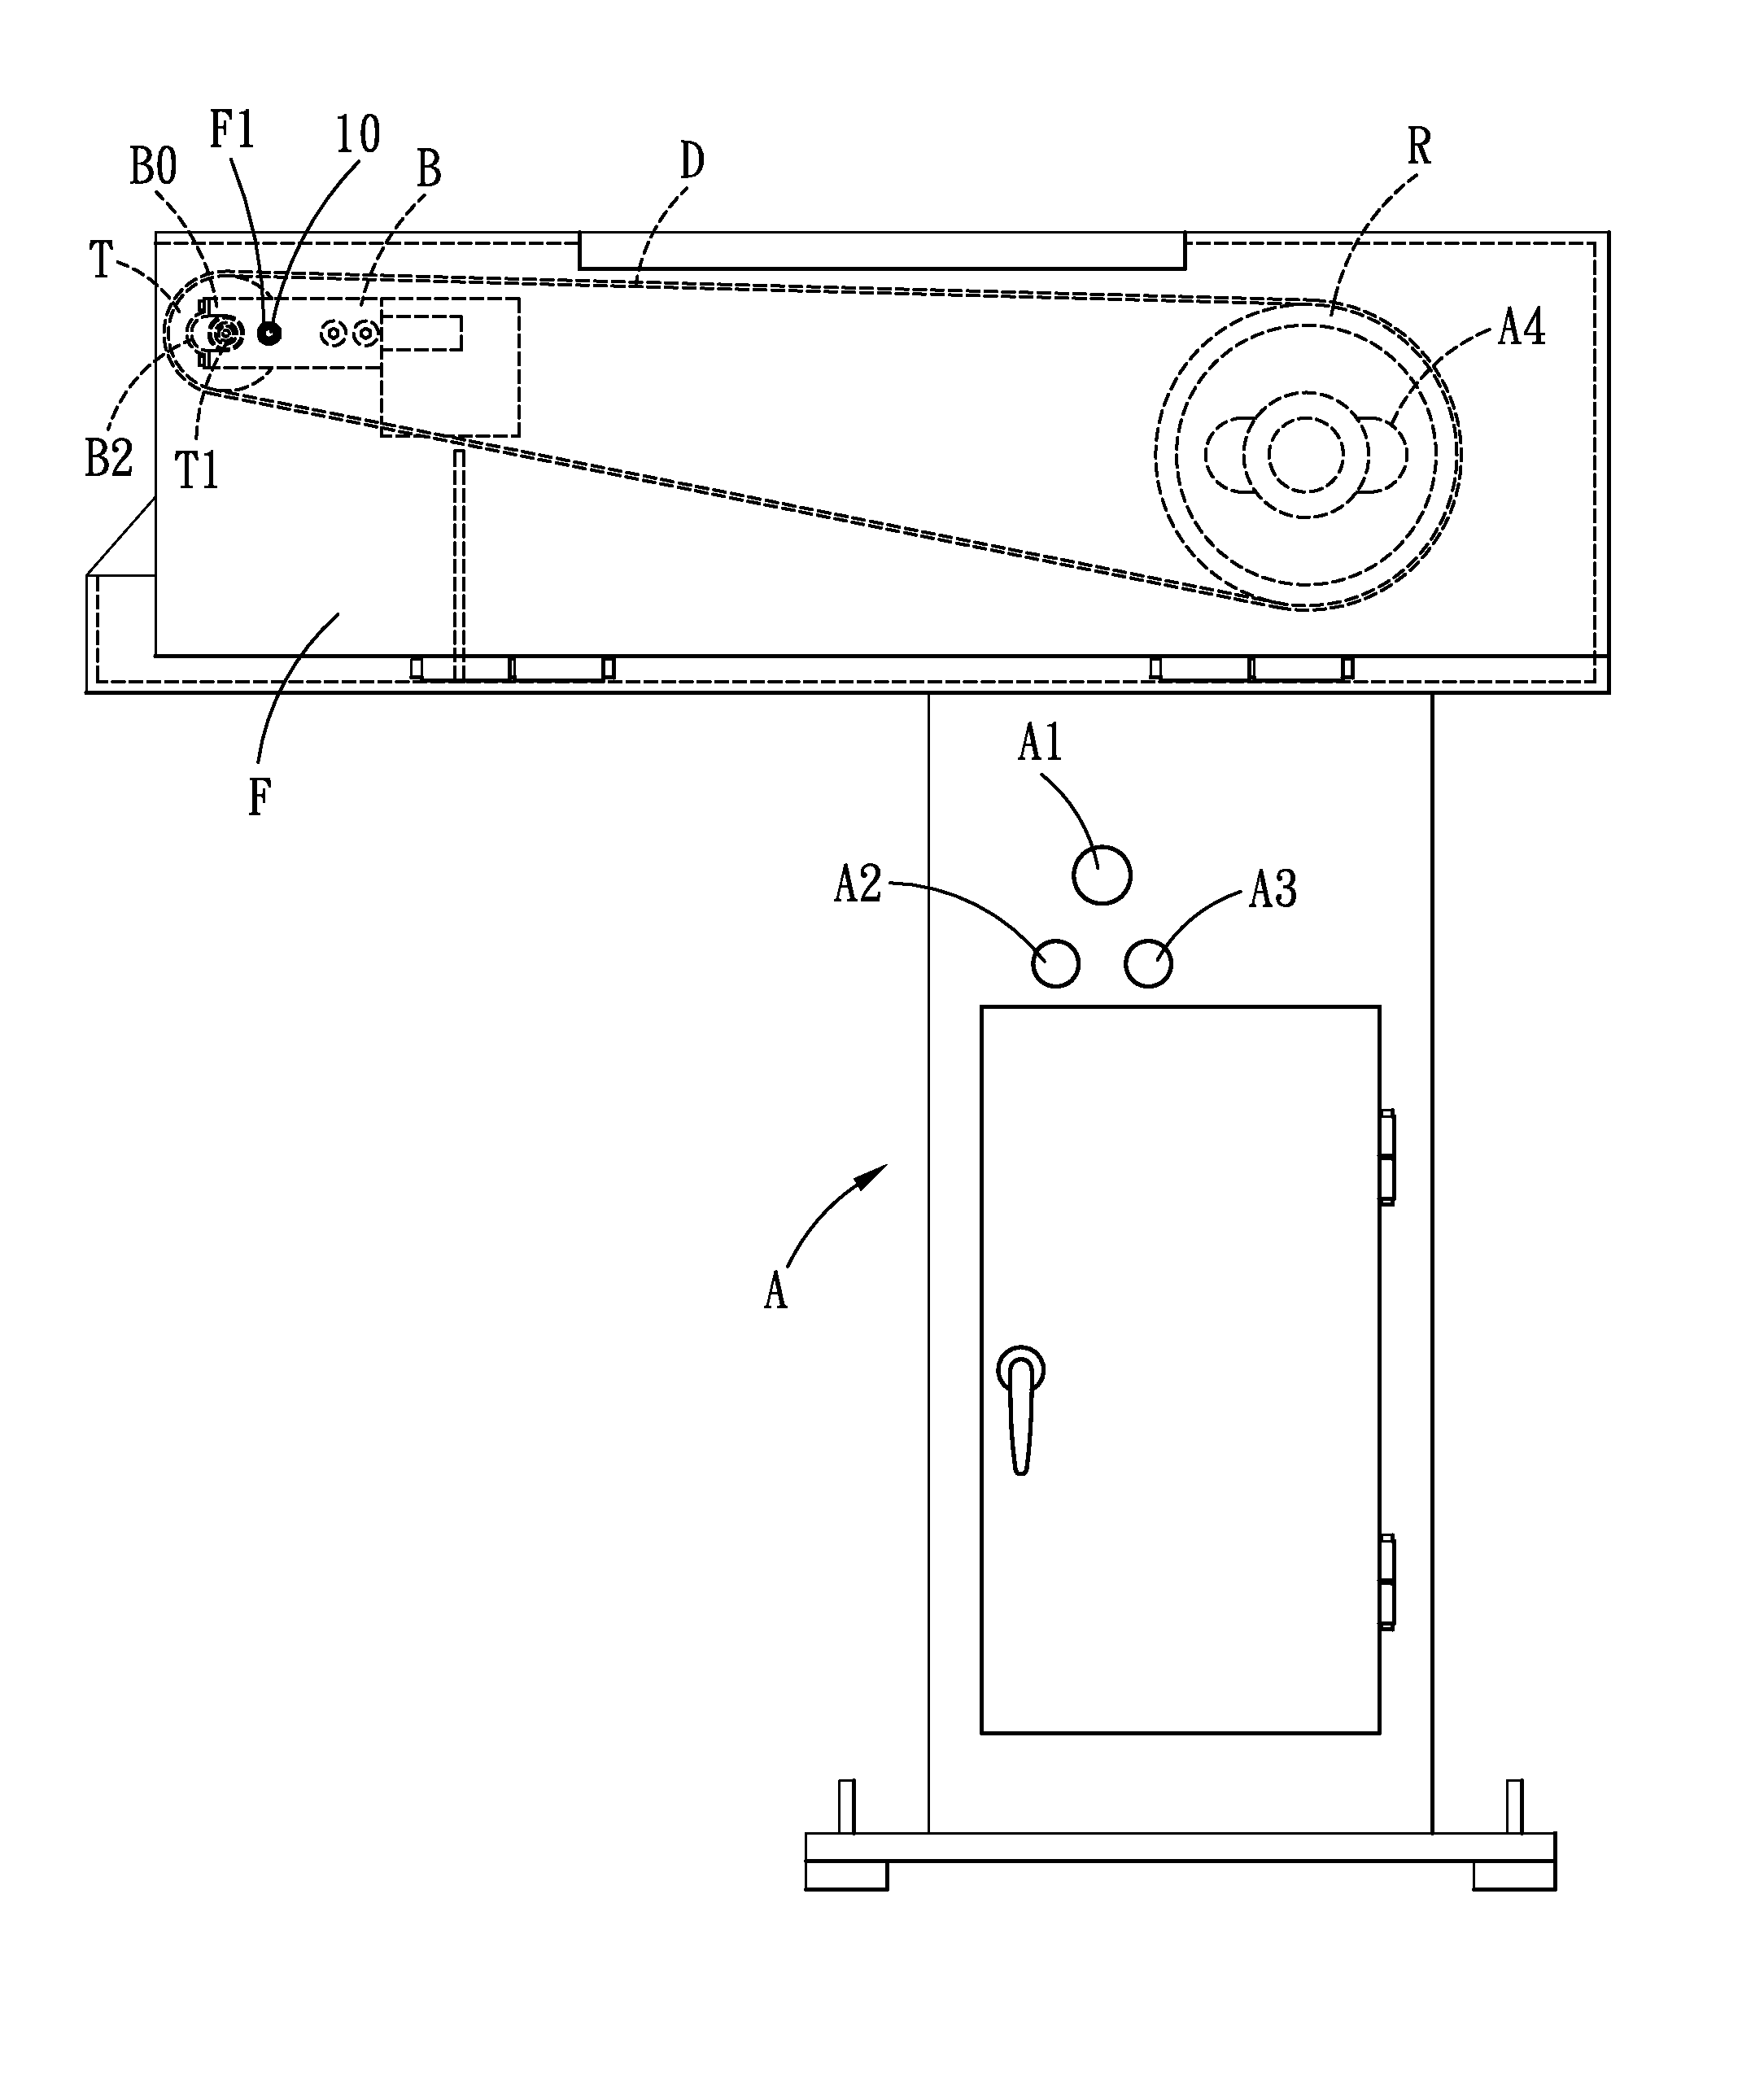 Belt grinding machine with a belt adjusting device